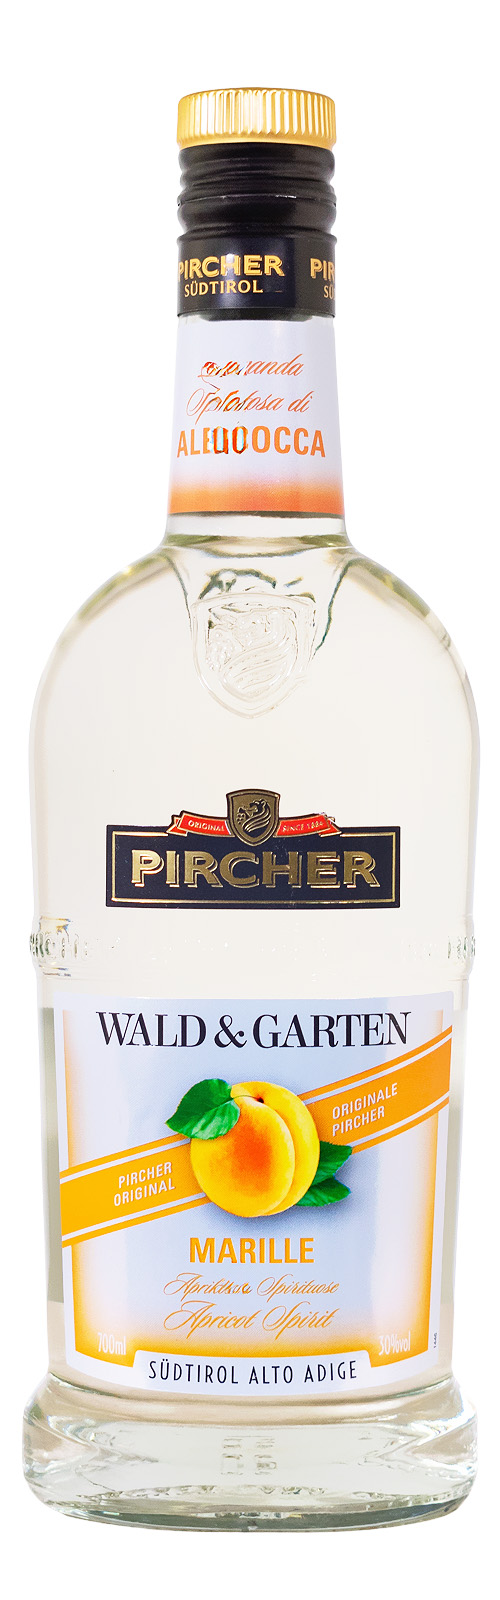 Pircher Wald & Garten Marille - 0,7L 30% vol